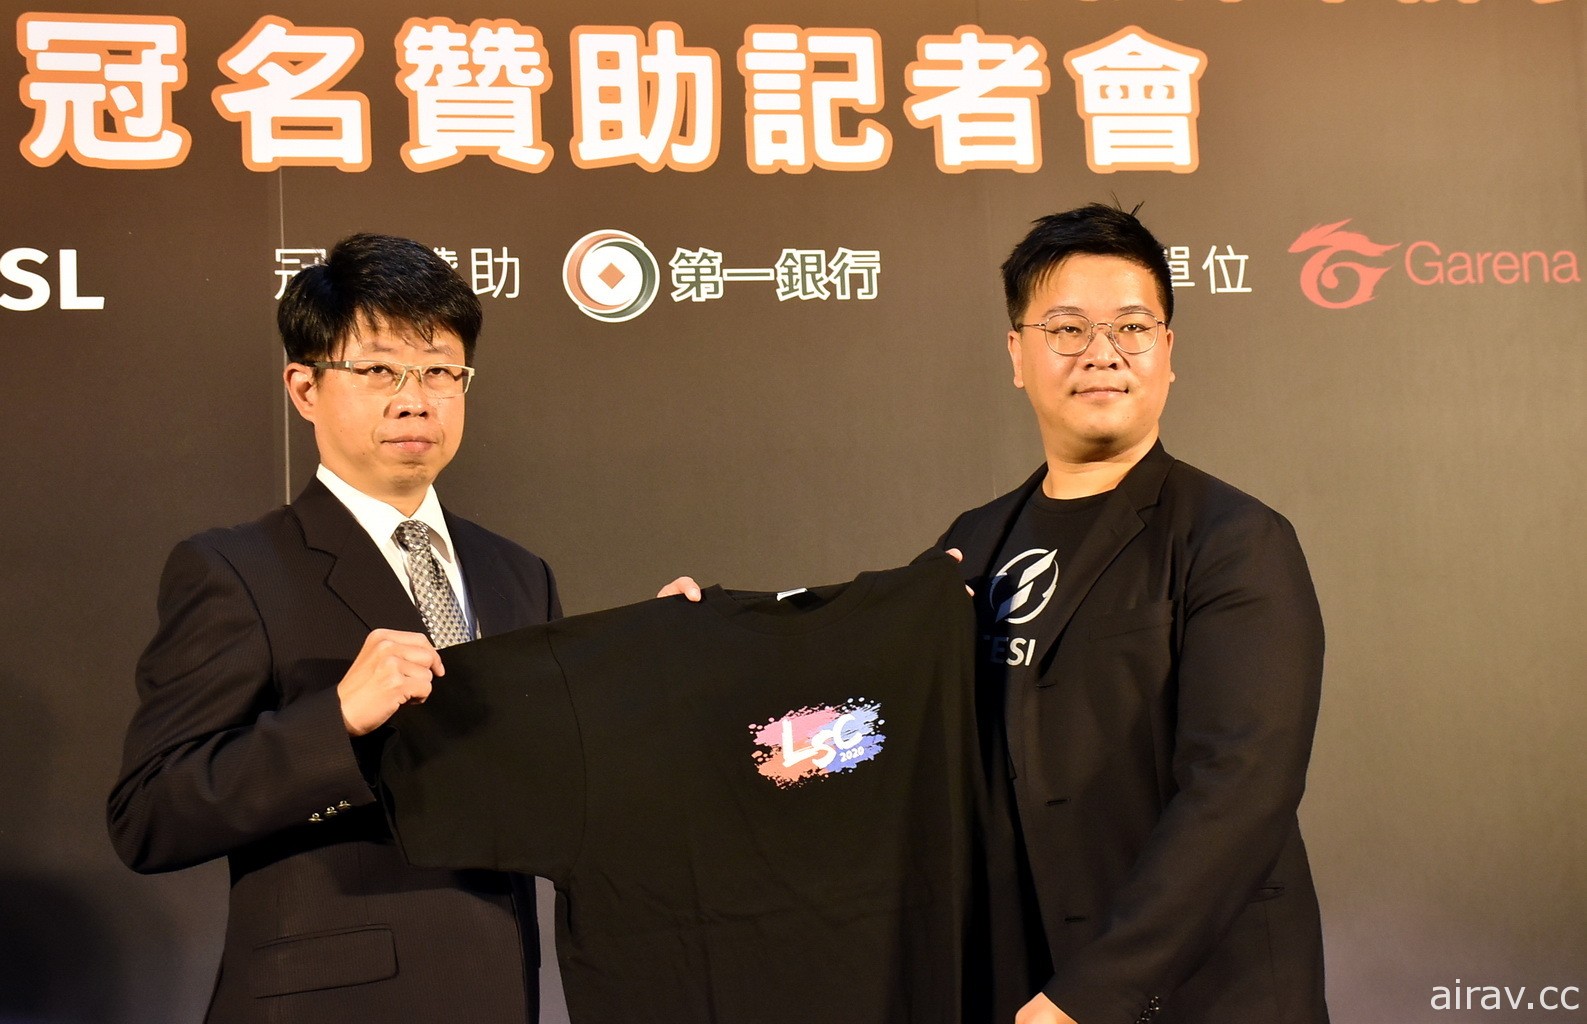 第一銀行冠名贊助《英雄聯盟》第四屆校園電競聯賽 LSC 期待培養更多台灣電競人才